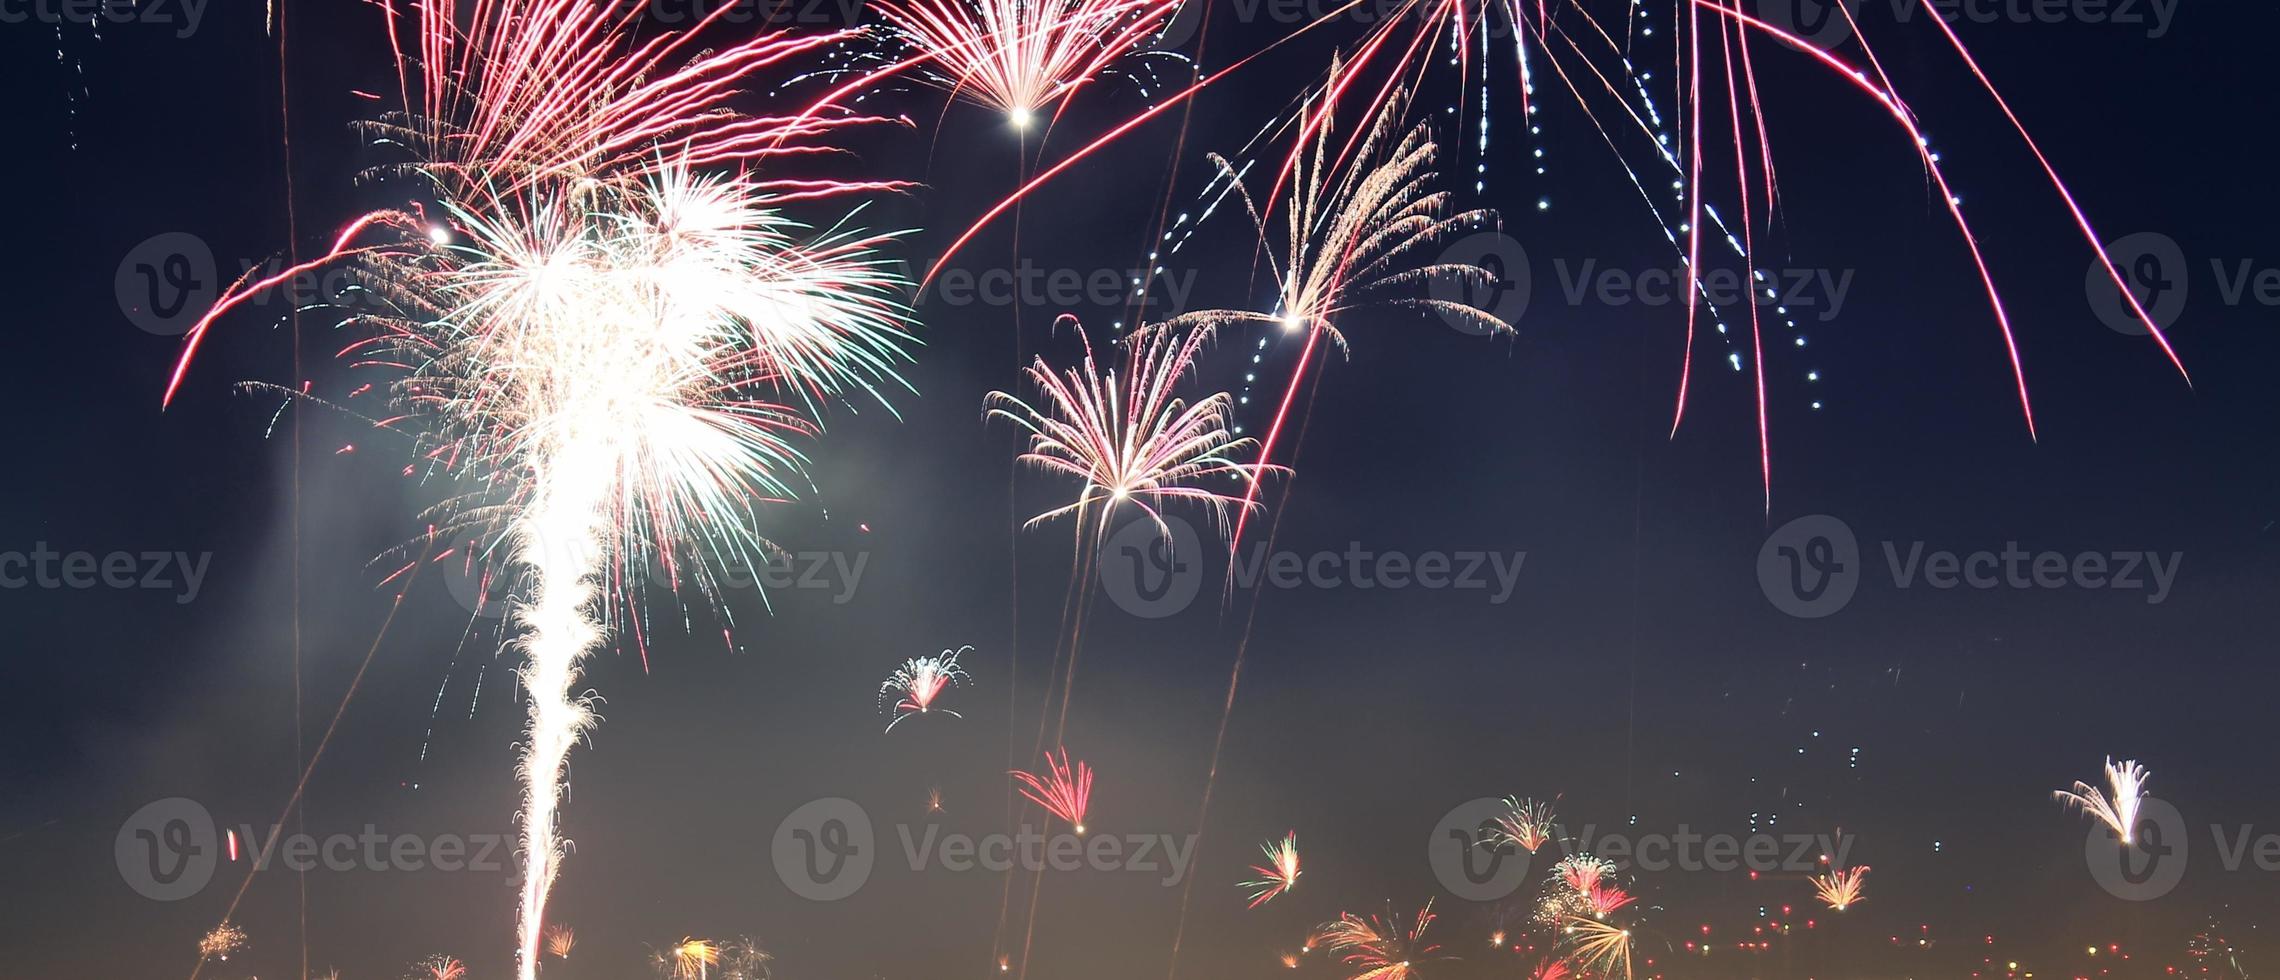 esposizione prolungata di fuochi d'artificio sui tetti di vienna foto